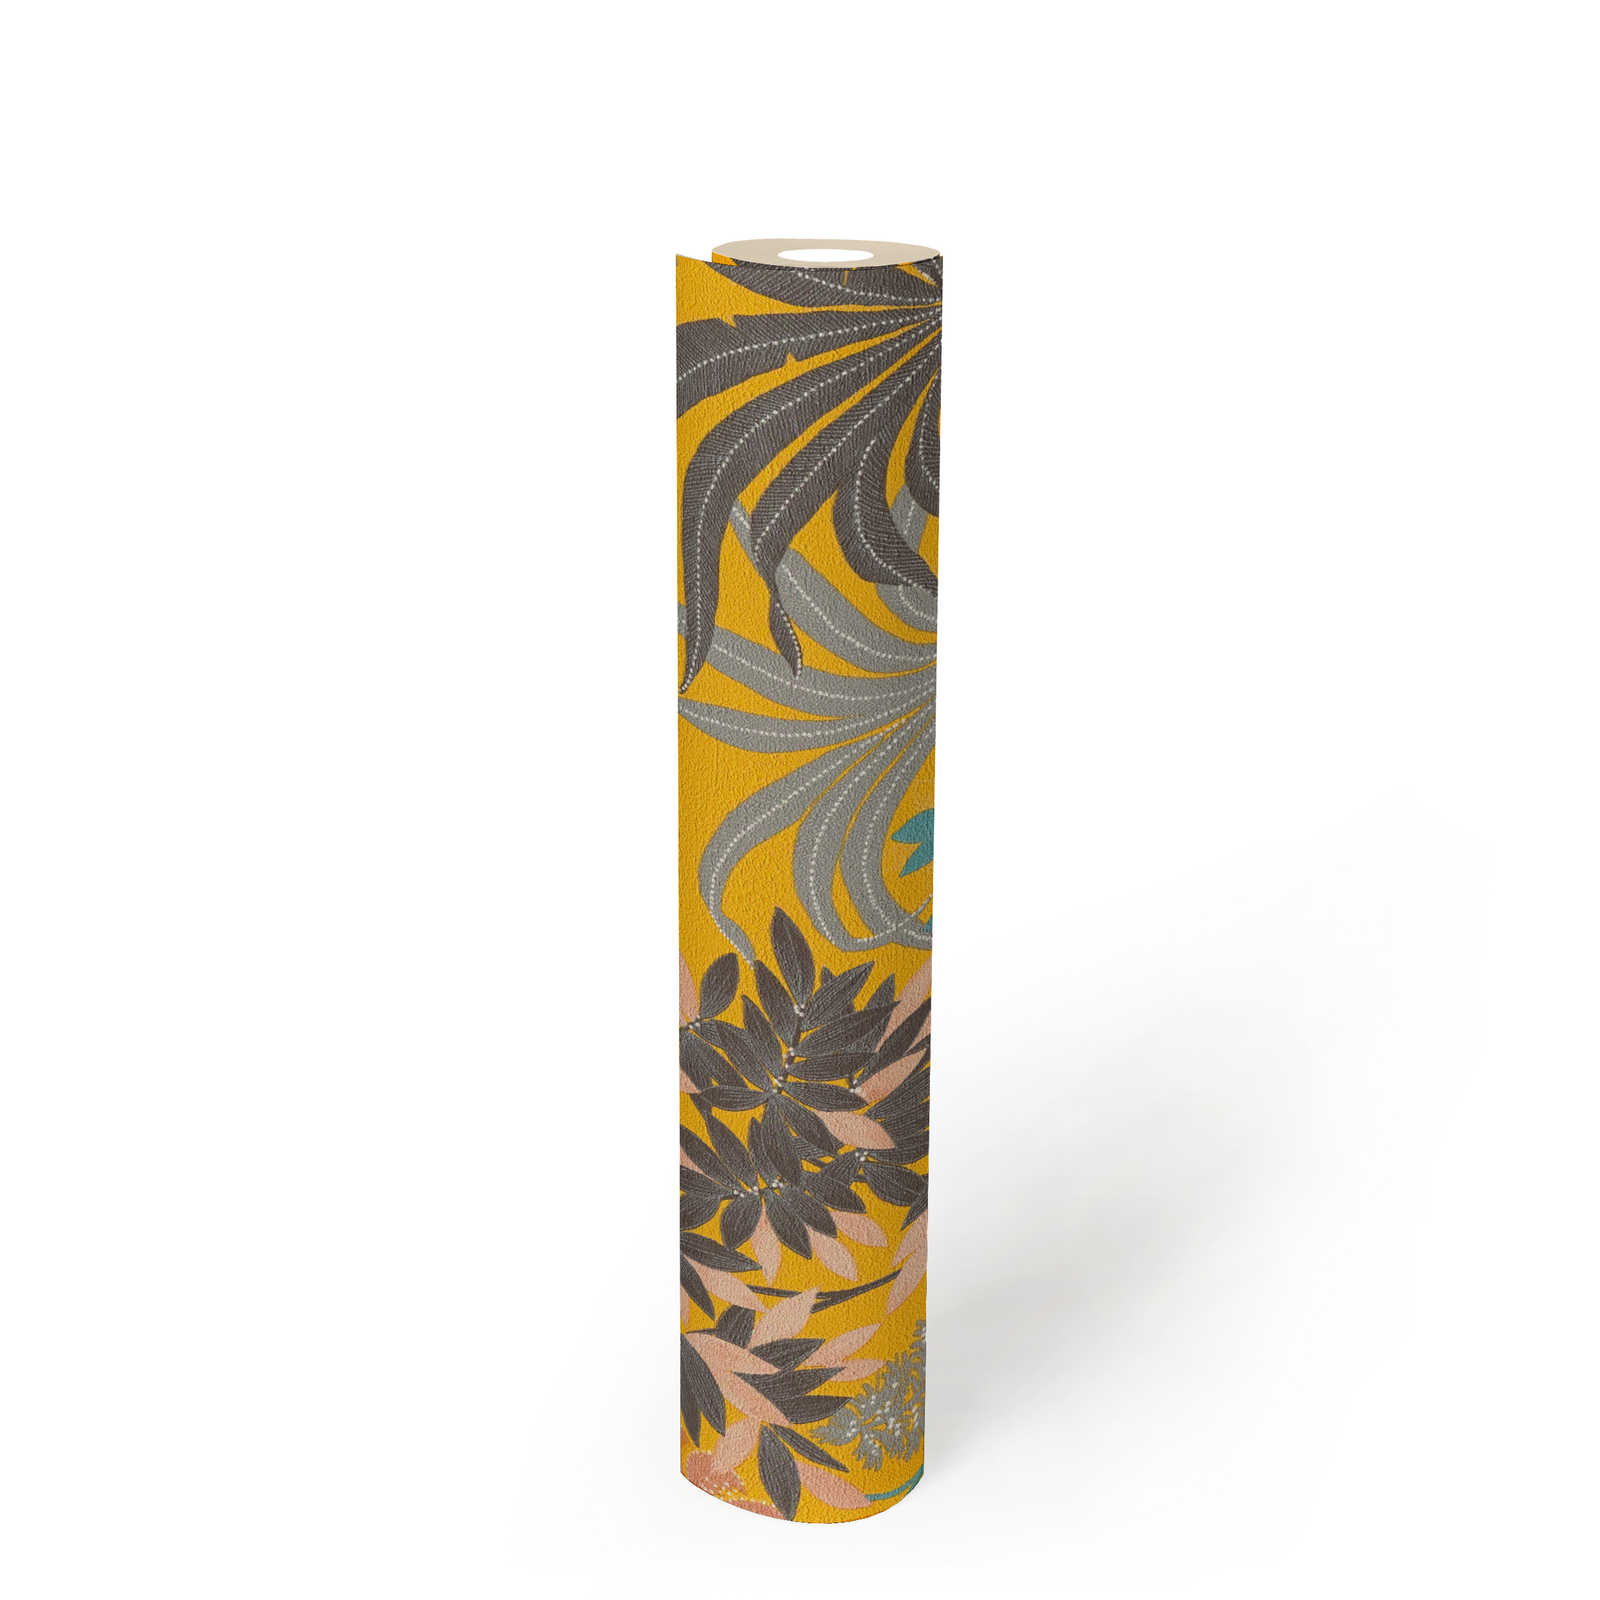             Llamativo papel pintado floral en colores vivos: amarillo, negro, rosa
        